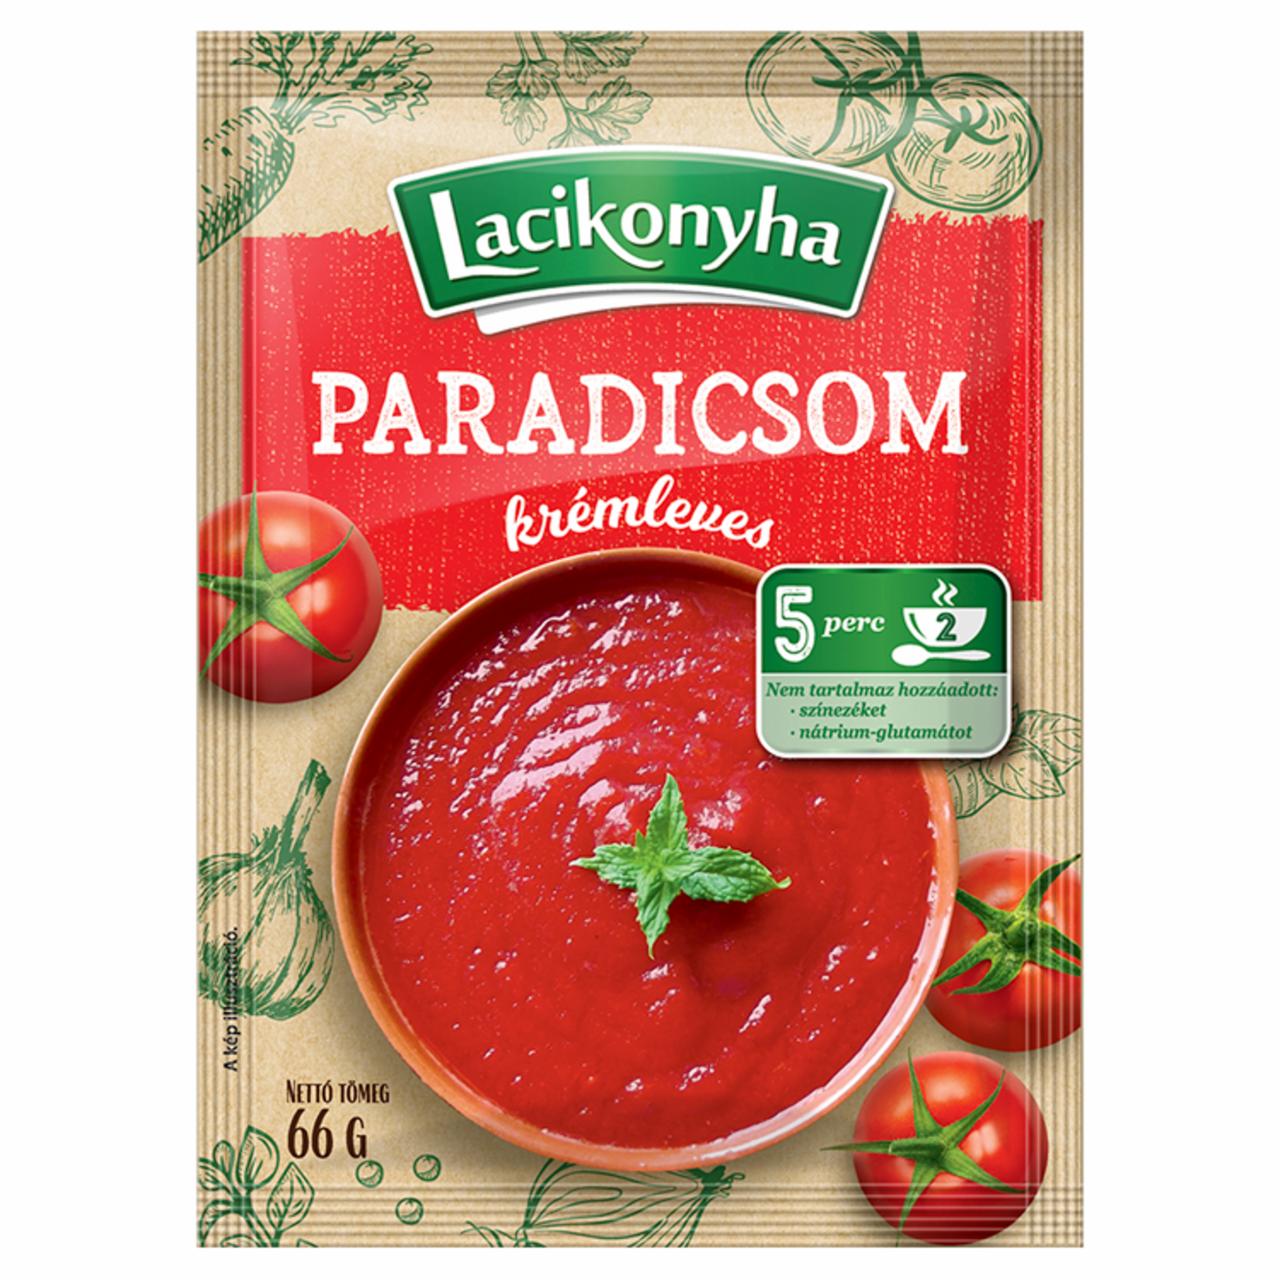 Képek - Lacikonyha paradicsom krémleves 66 g